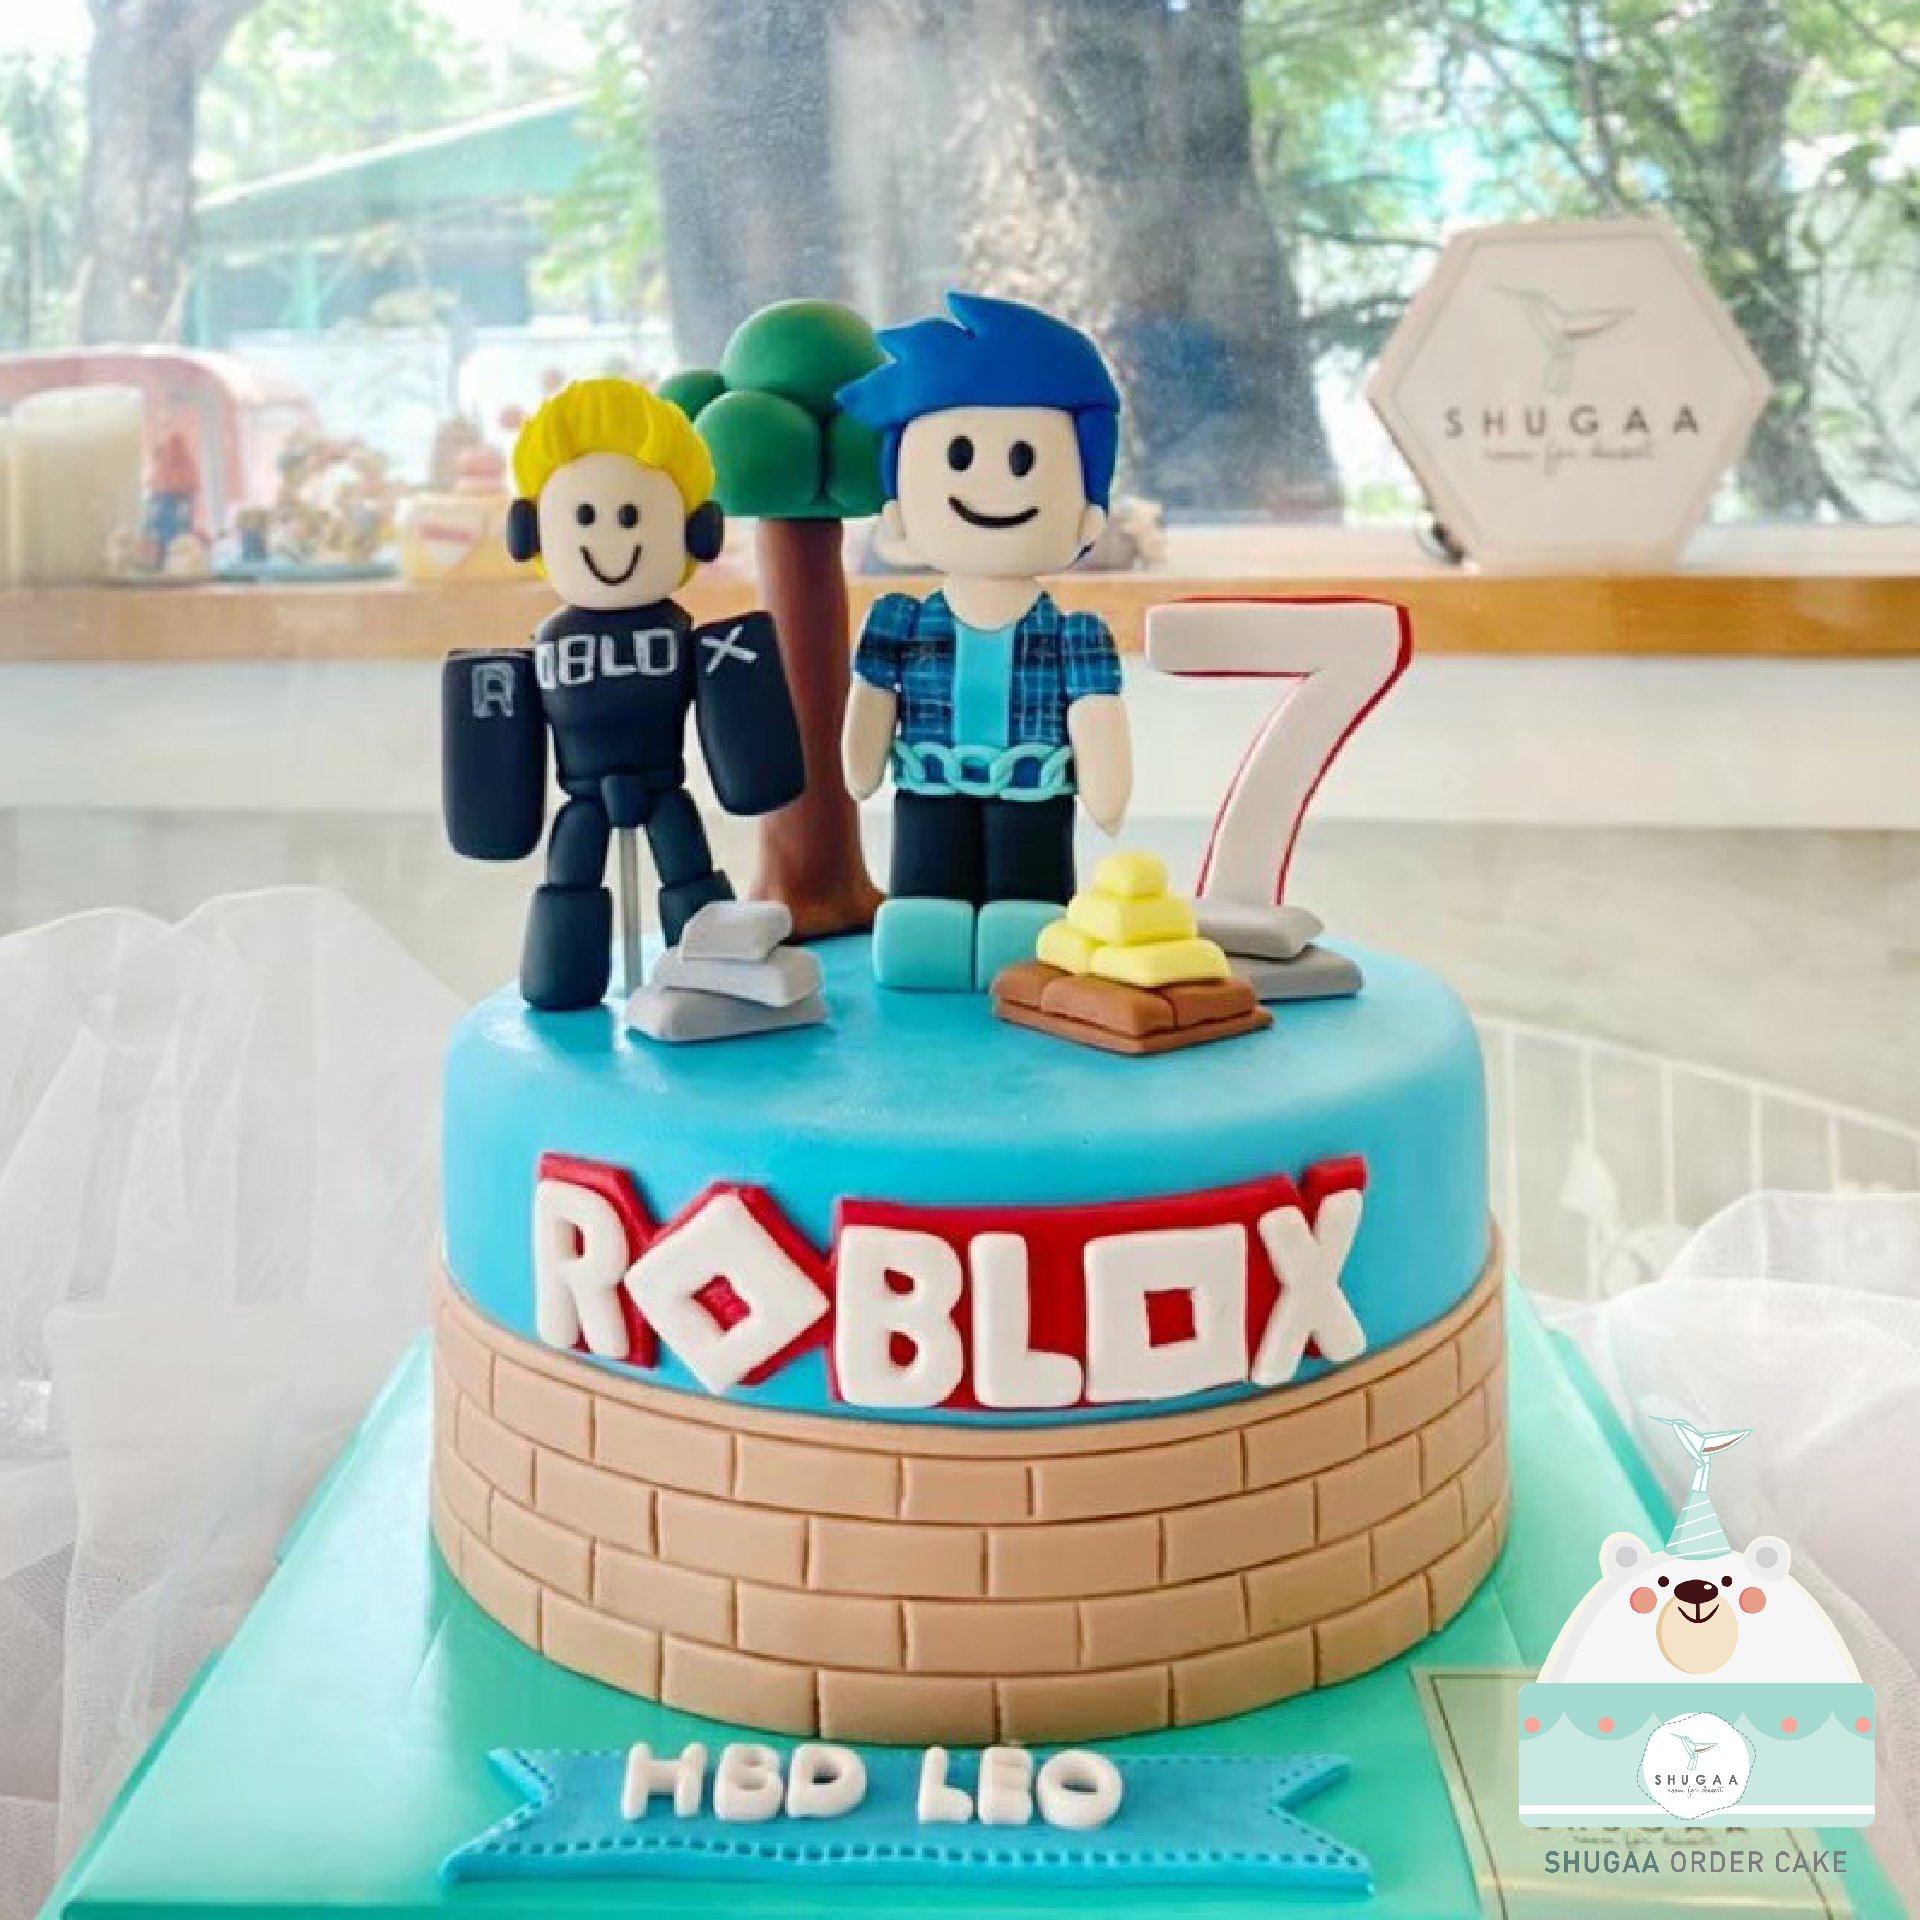 เค้กโรบล็อกซ์ - Roblox Cake